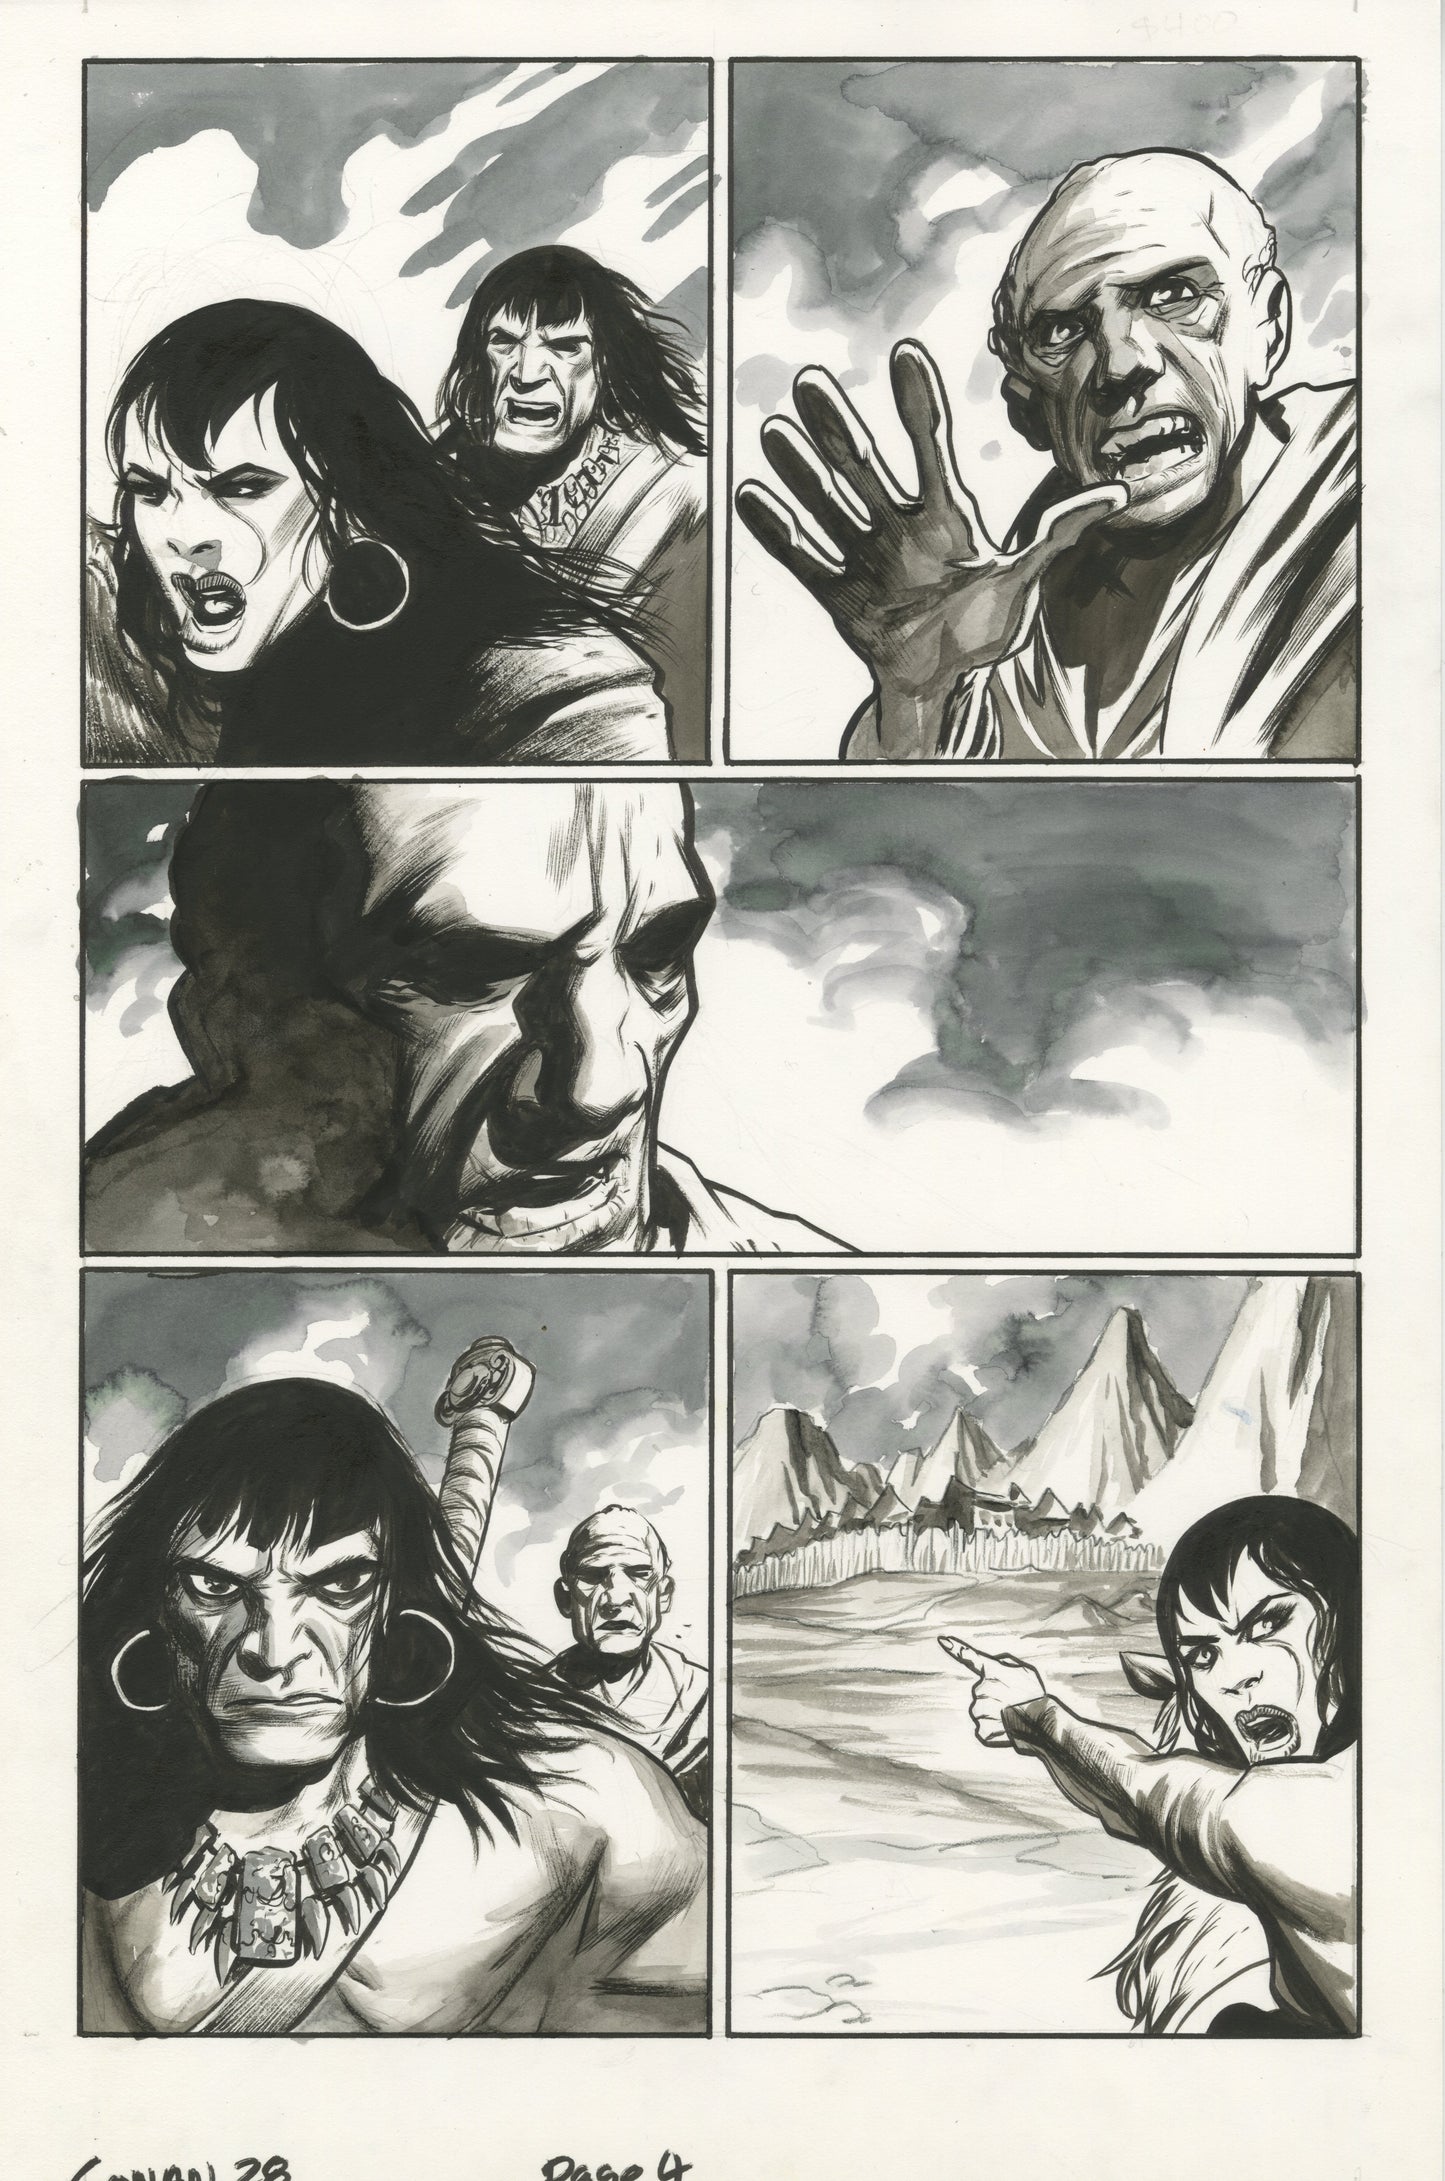 Conan #28, page #04 (2006, Dark Horse)